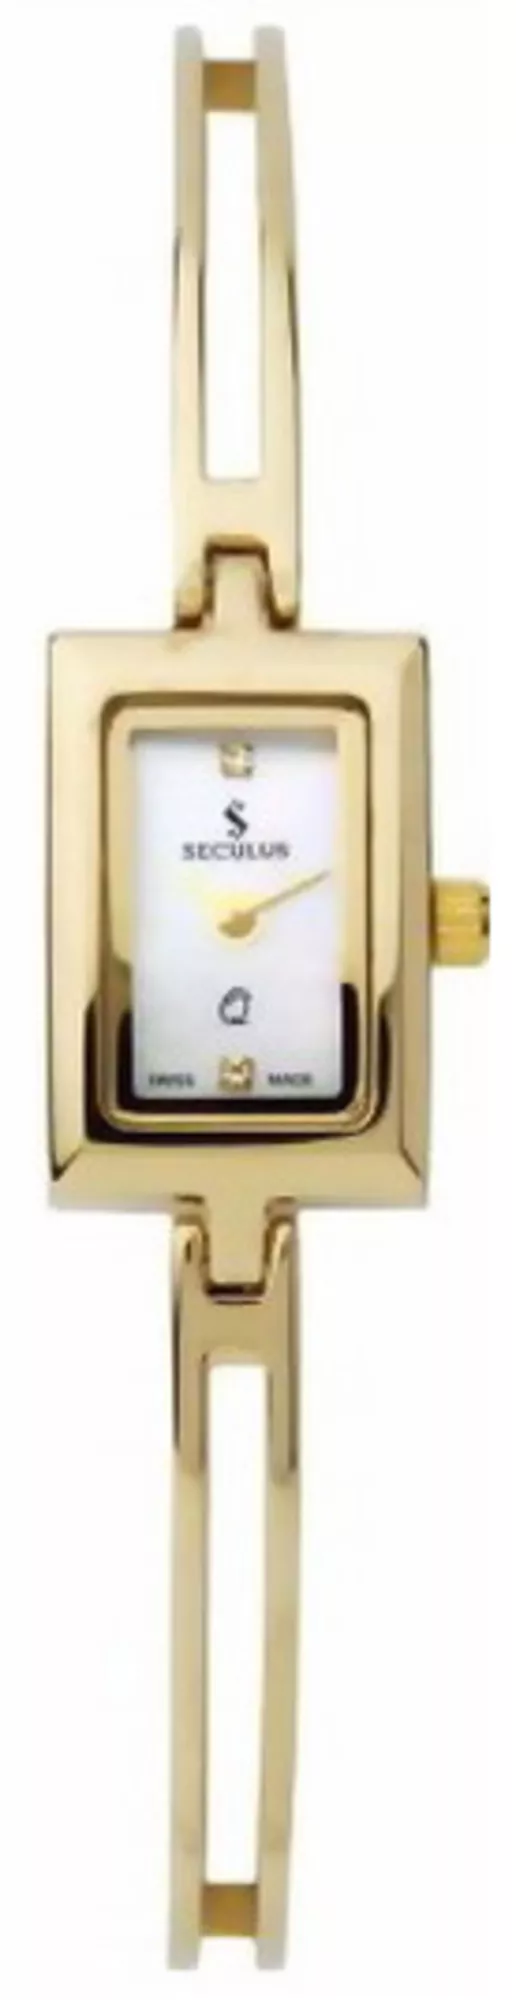 Часы Seculus 1587.1.732 mop, pvd